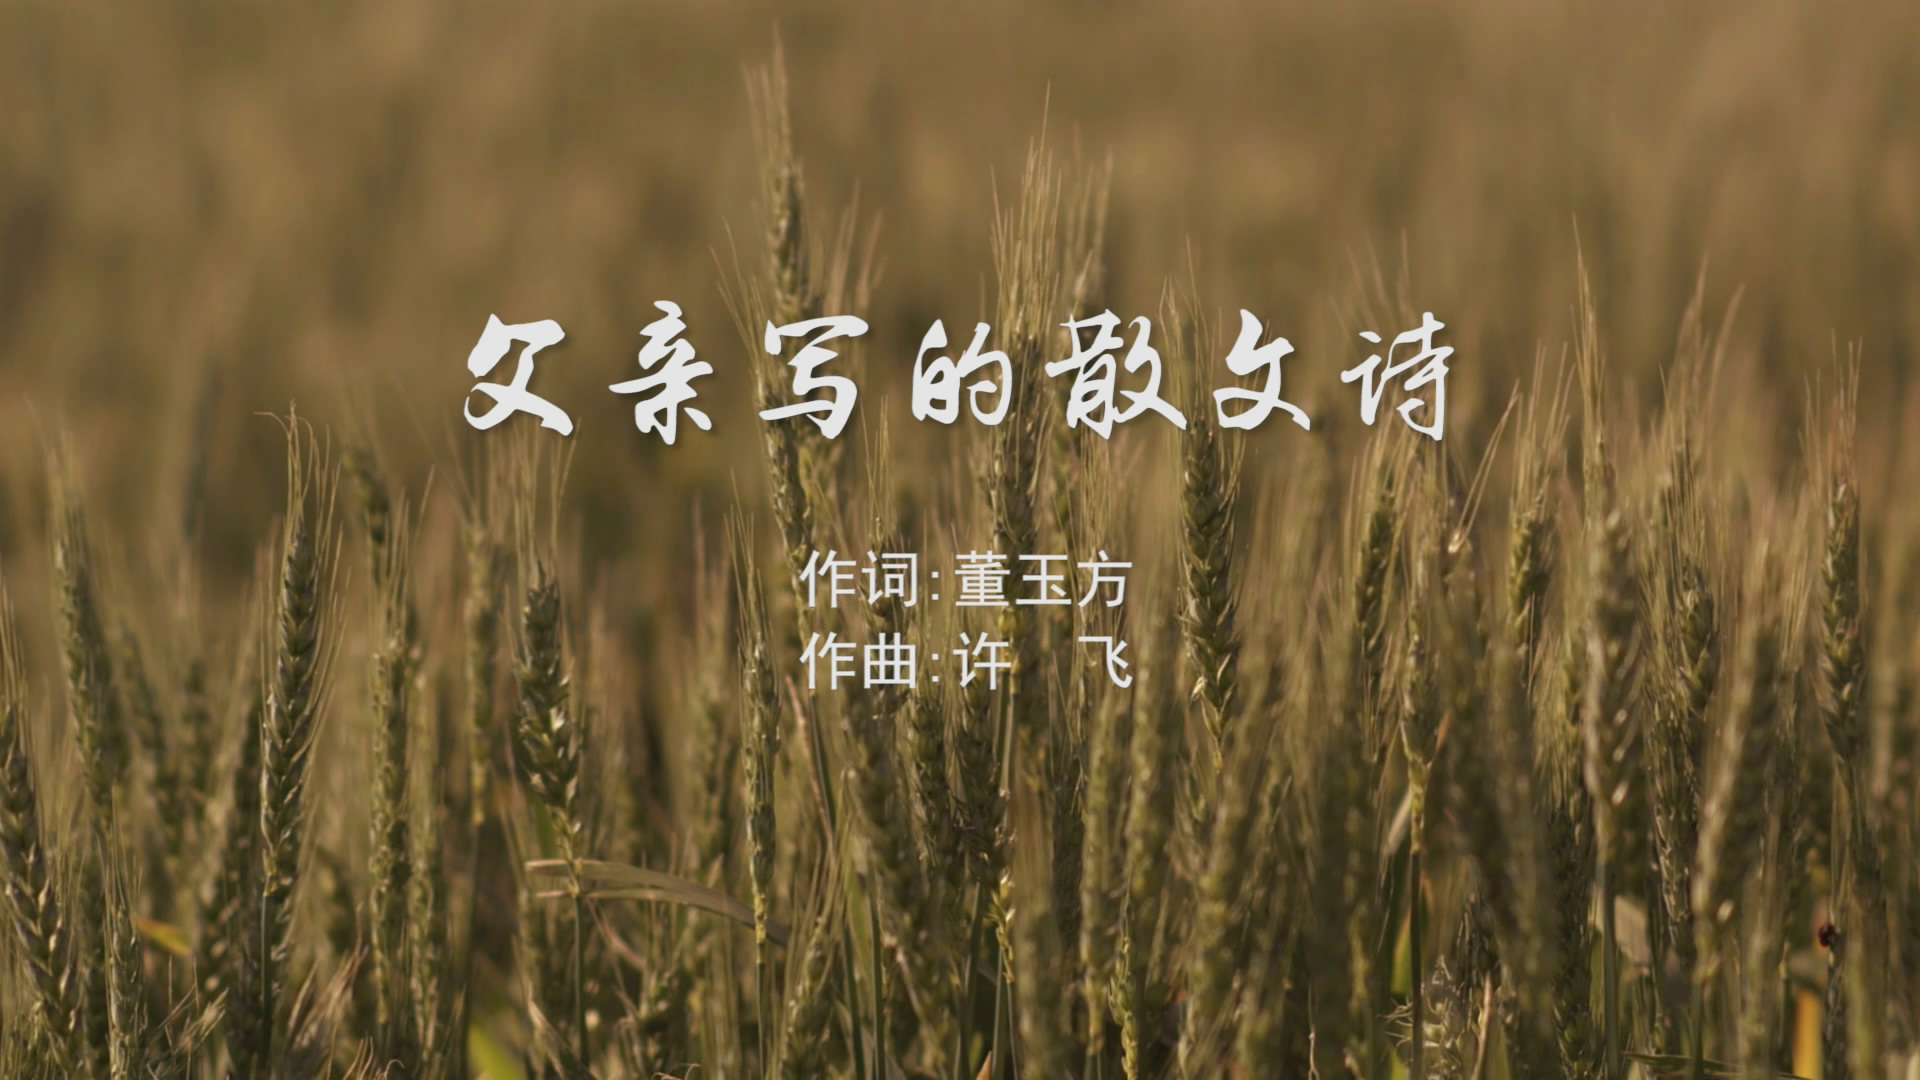 父亲写的散文诗 刘乐瑶版MV字幕配乐伴奏中国新生代LED背景大屏幕视频素材TV